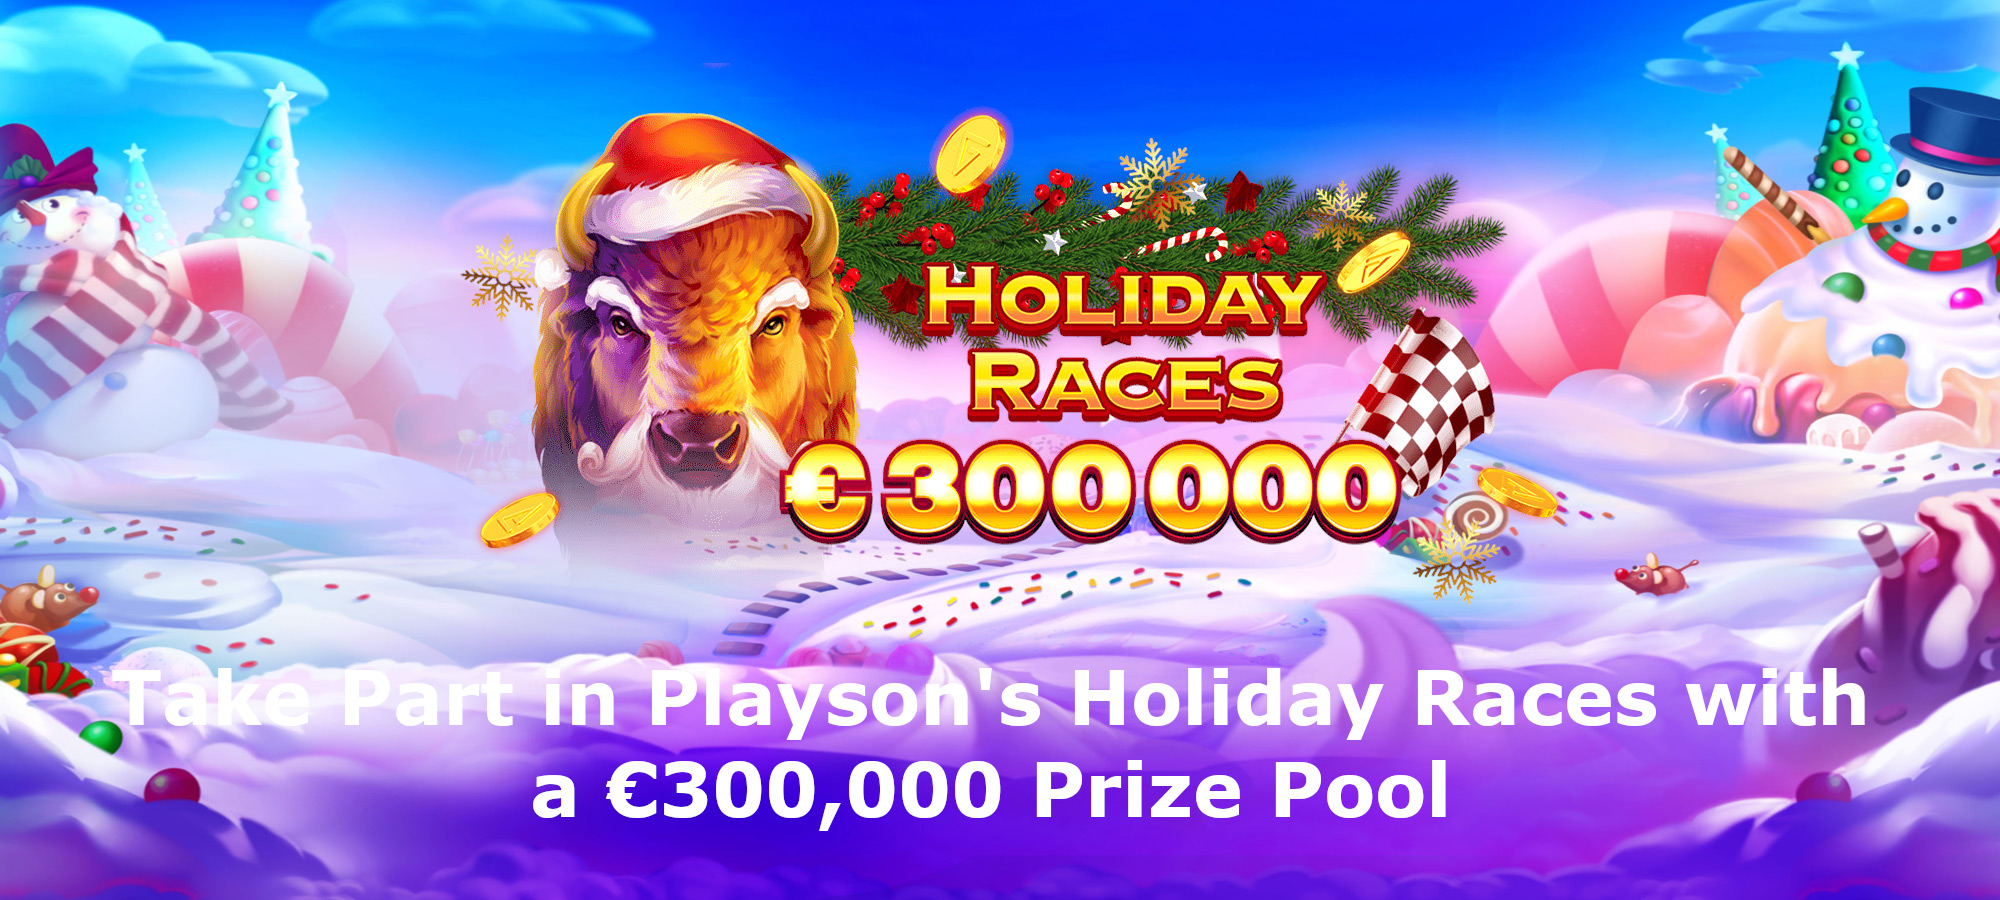 Participa en Playson’s Holiday Races y Gana Premios de 300,000 Euros